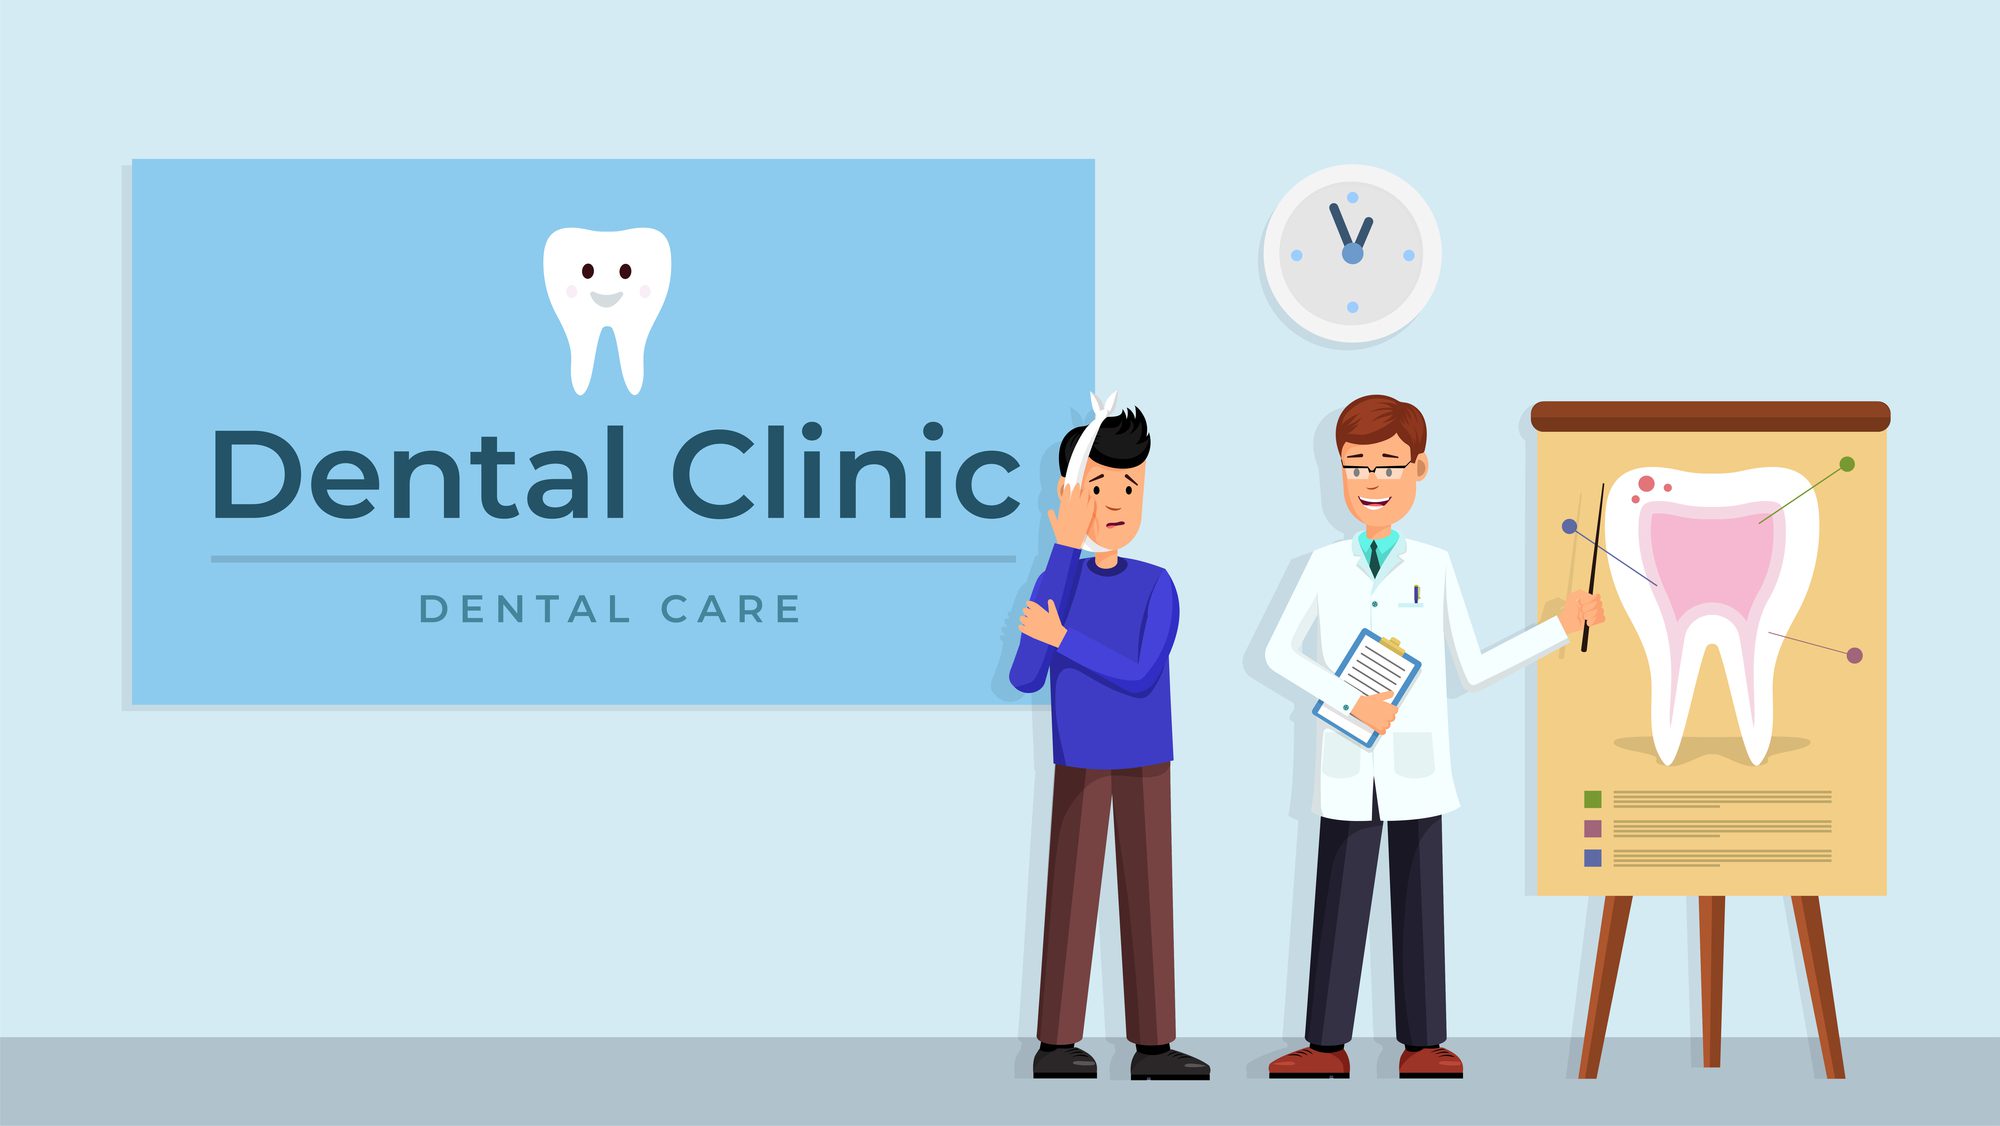 Hosack Denture Clinic Ltd